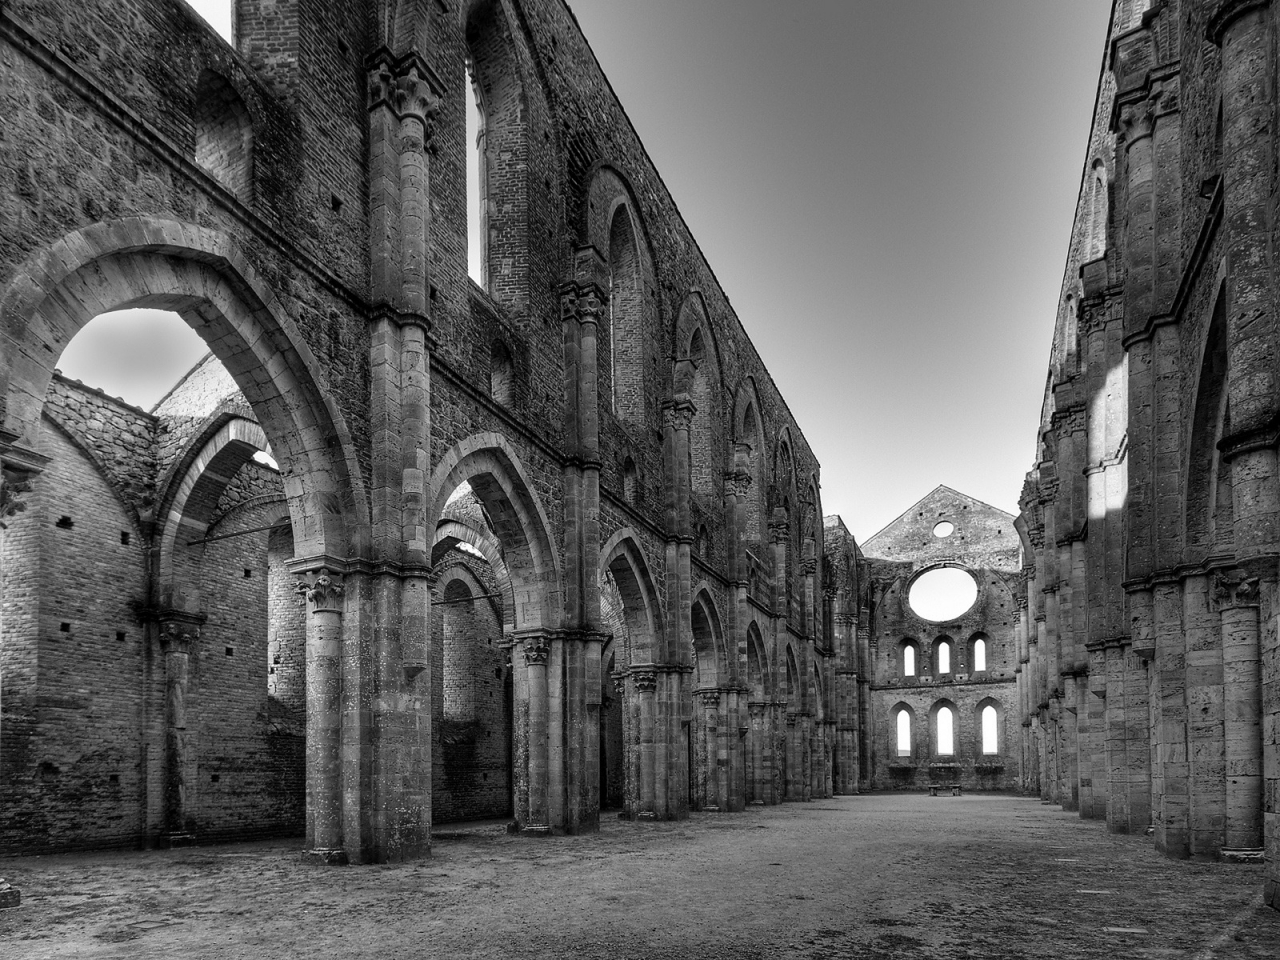 San Galgano Abbey for 1280 x 960 resolution